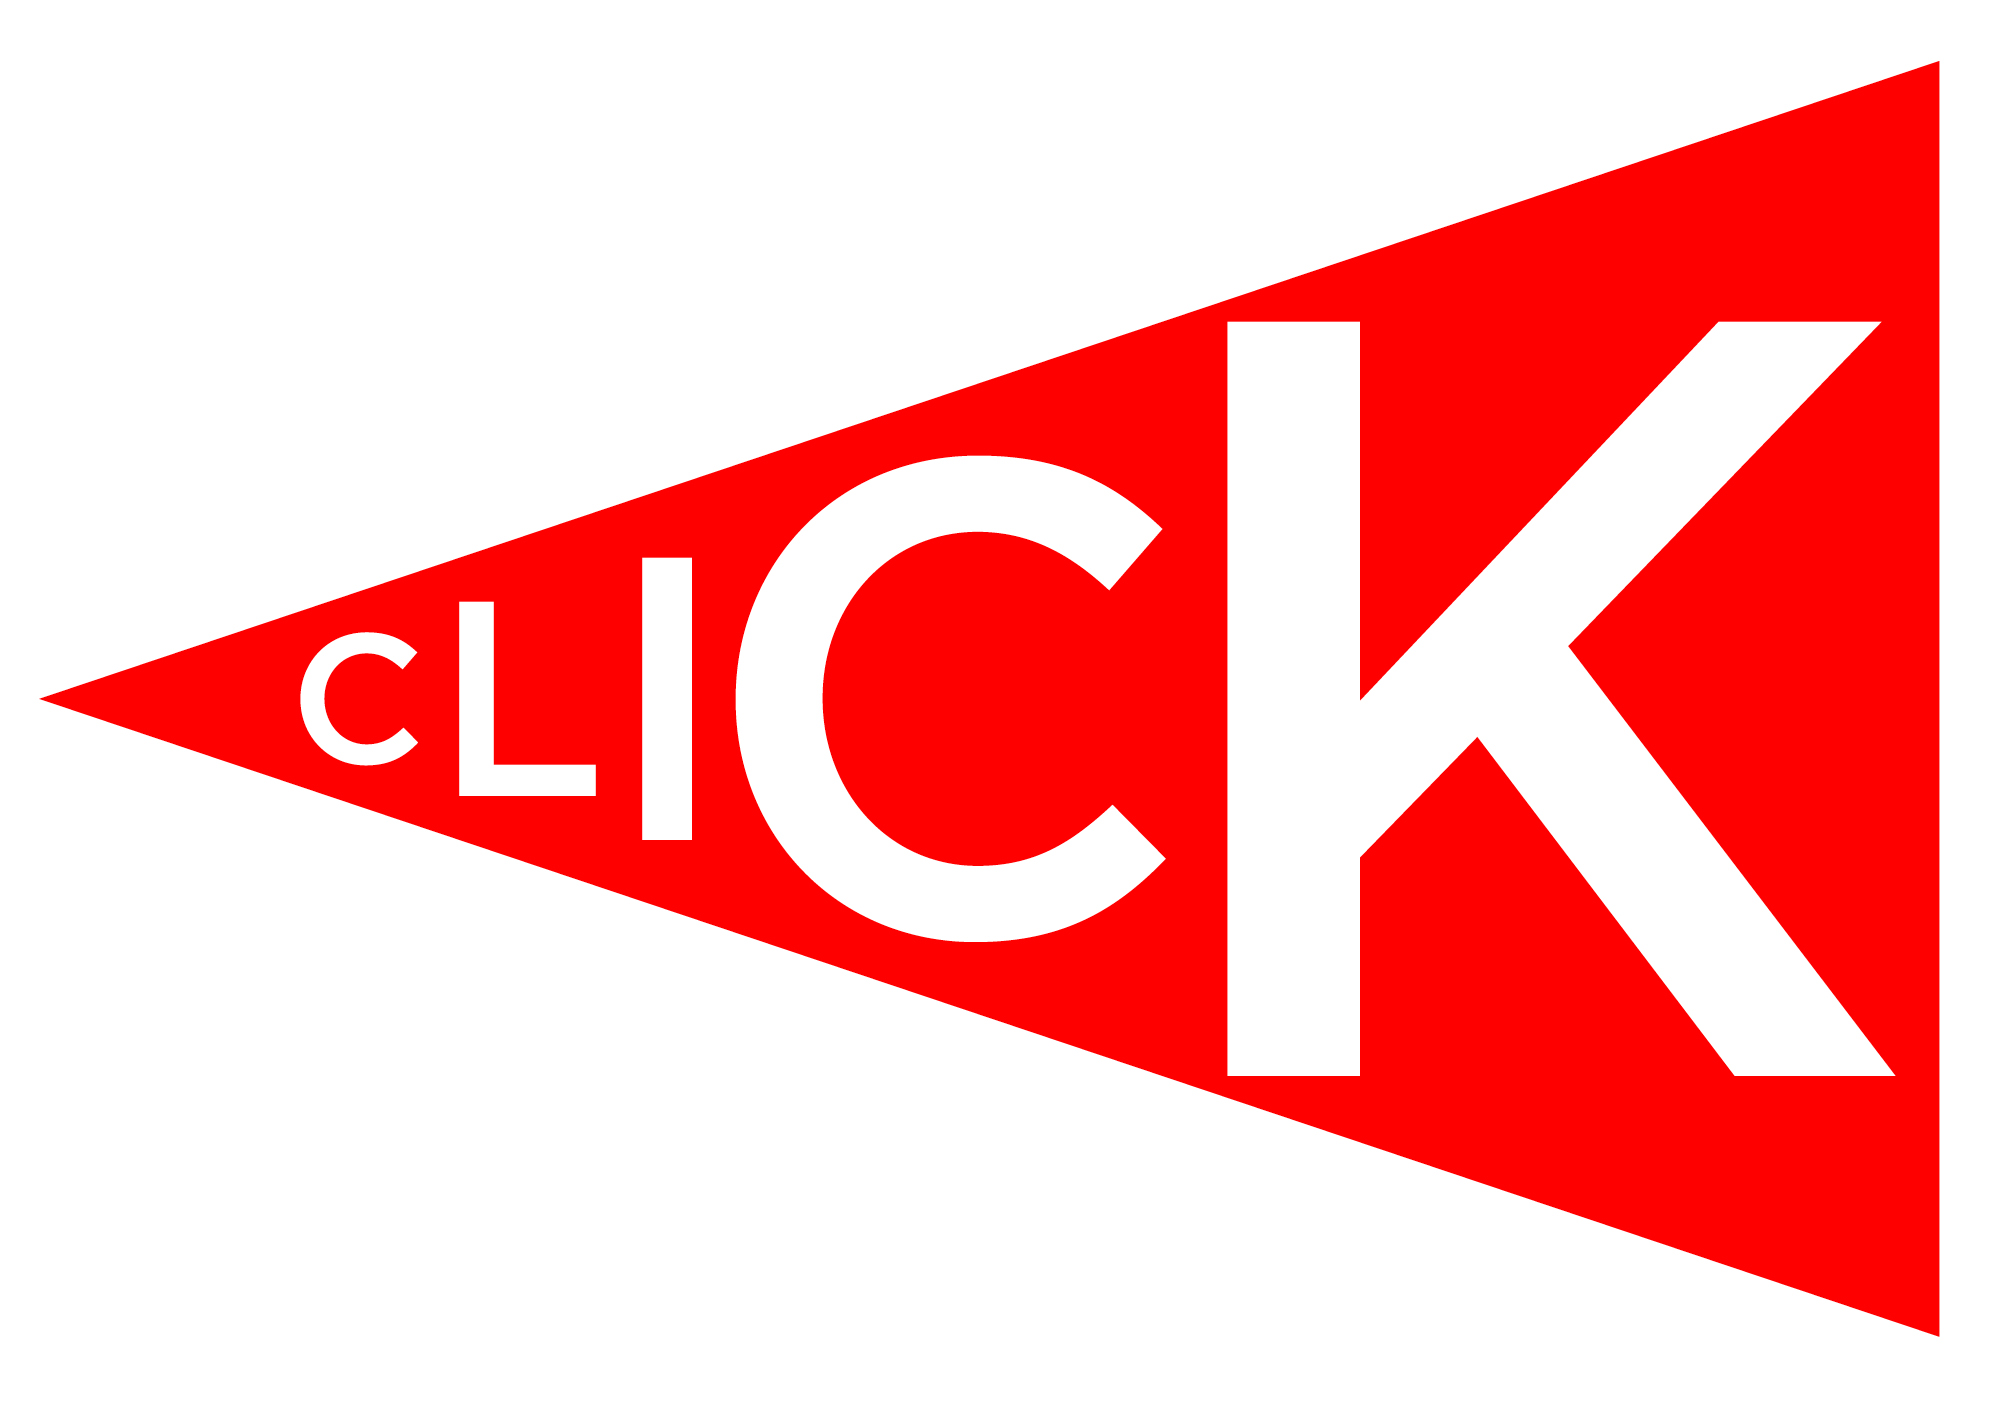 click_logo - Hubertus Design Hubertus Design